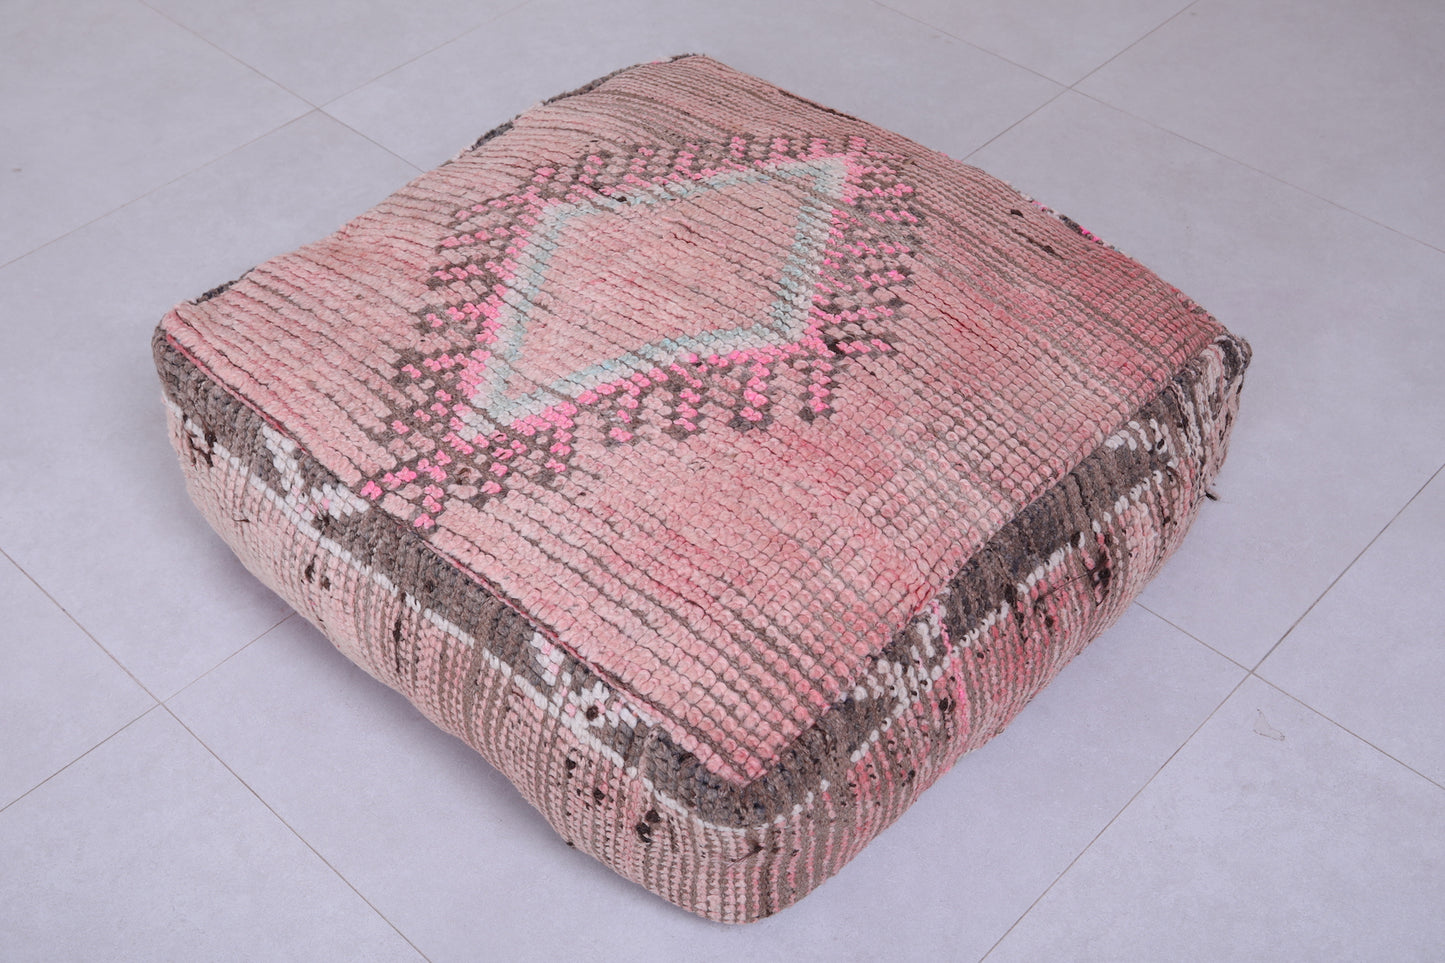 Moroccan handmade ottoman rug pouf